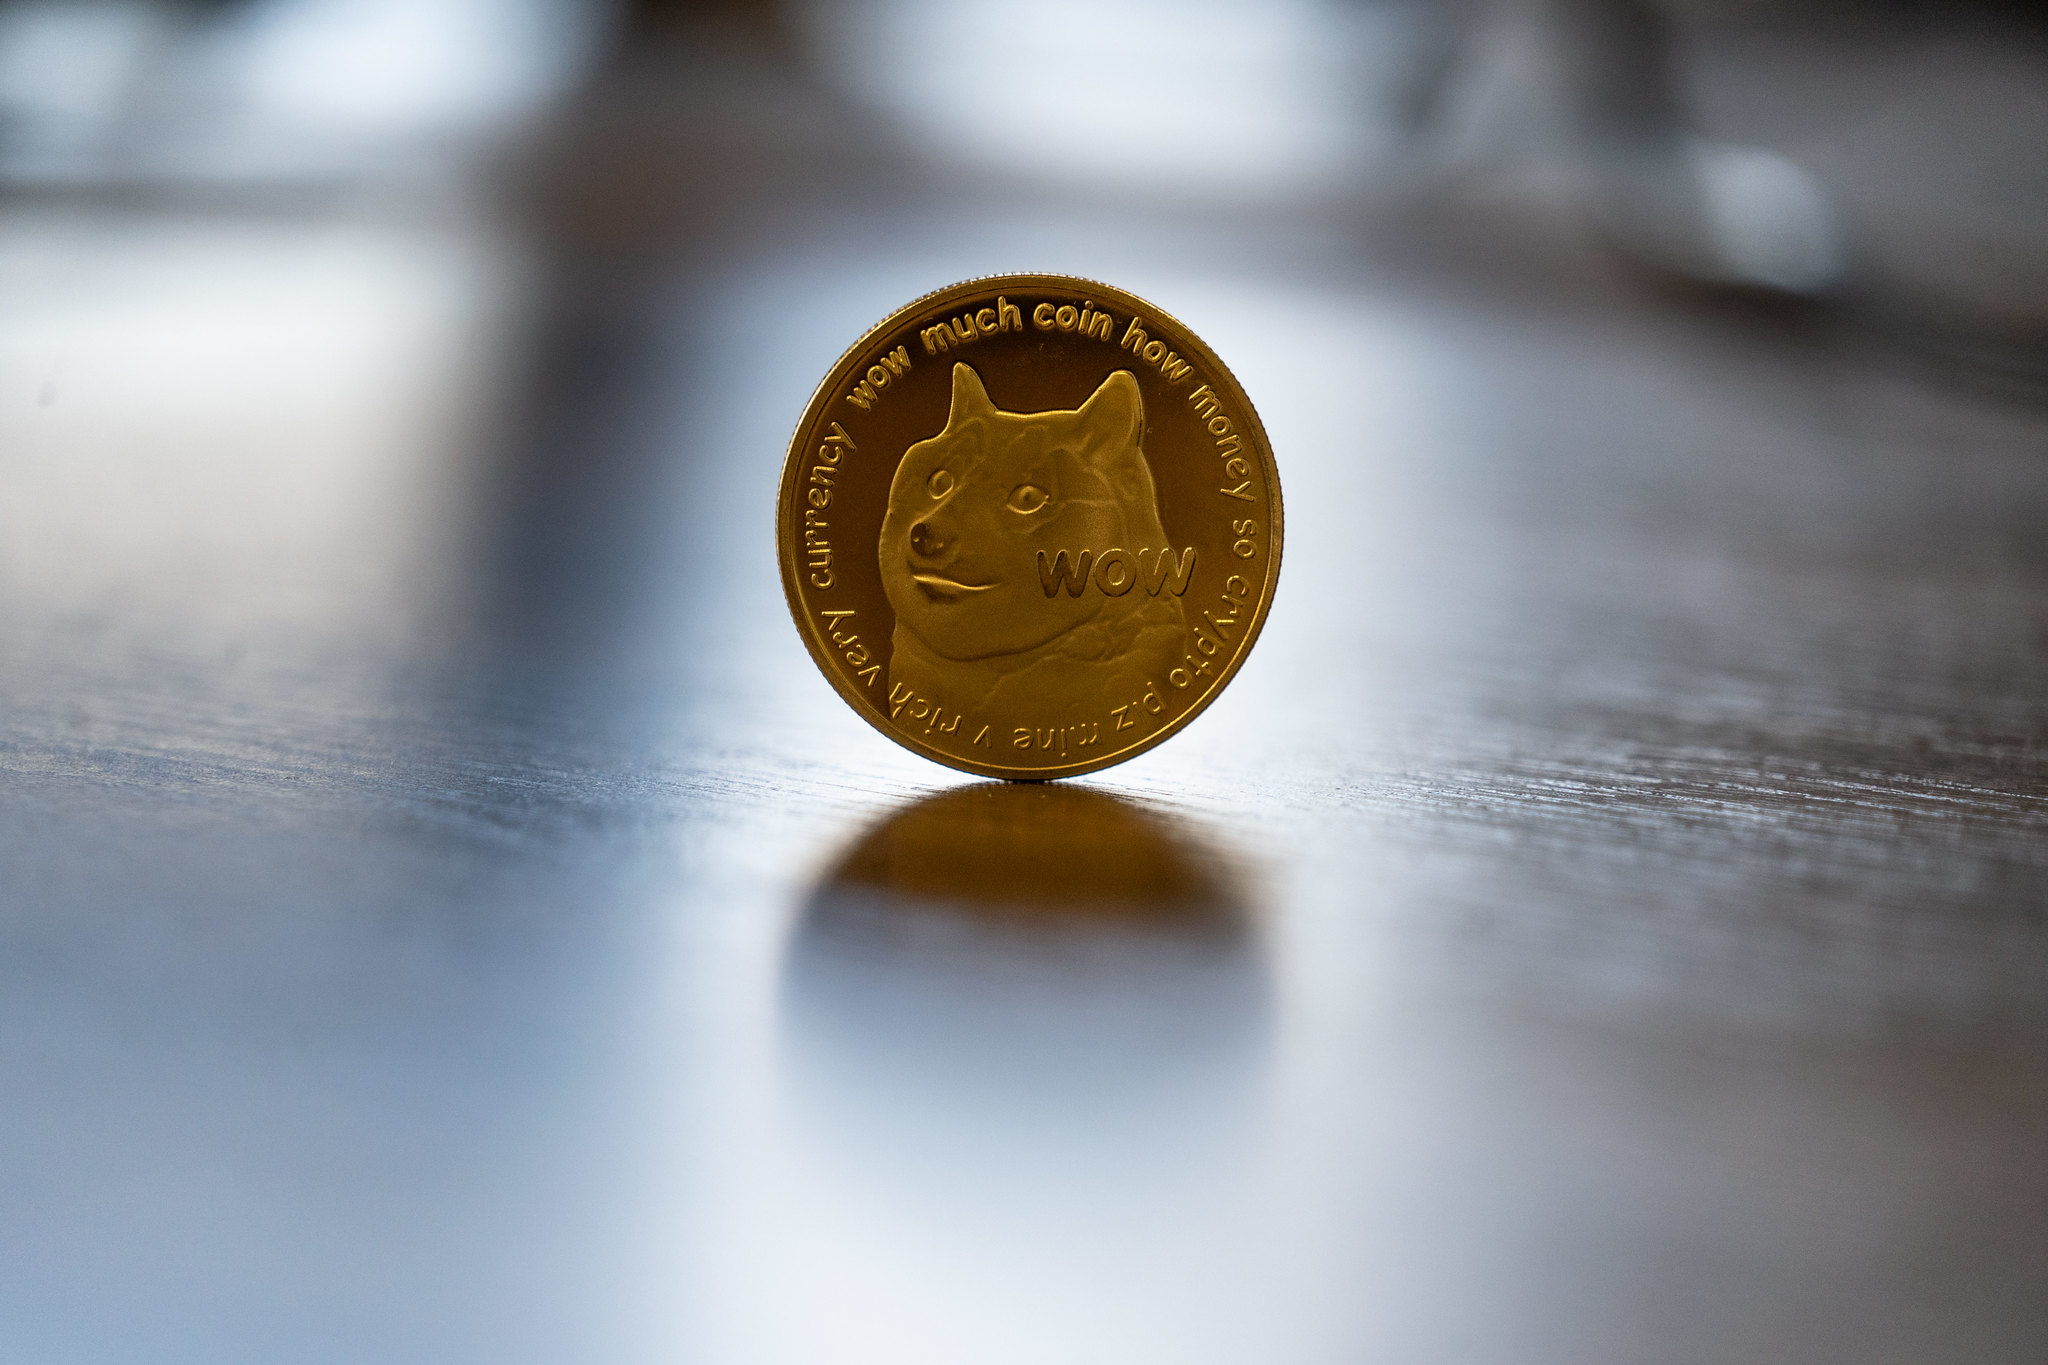 یک سرمایه گذار حوزه رمز ارز دوج کوین (Dogecoin) داستان میلیونر شدن خود پس از سرمایه گذاری در قالب این رمز ارز را بیان کرده است.